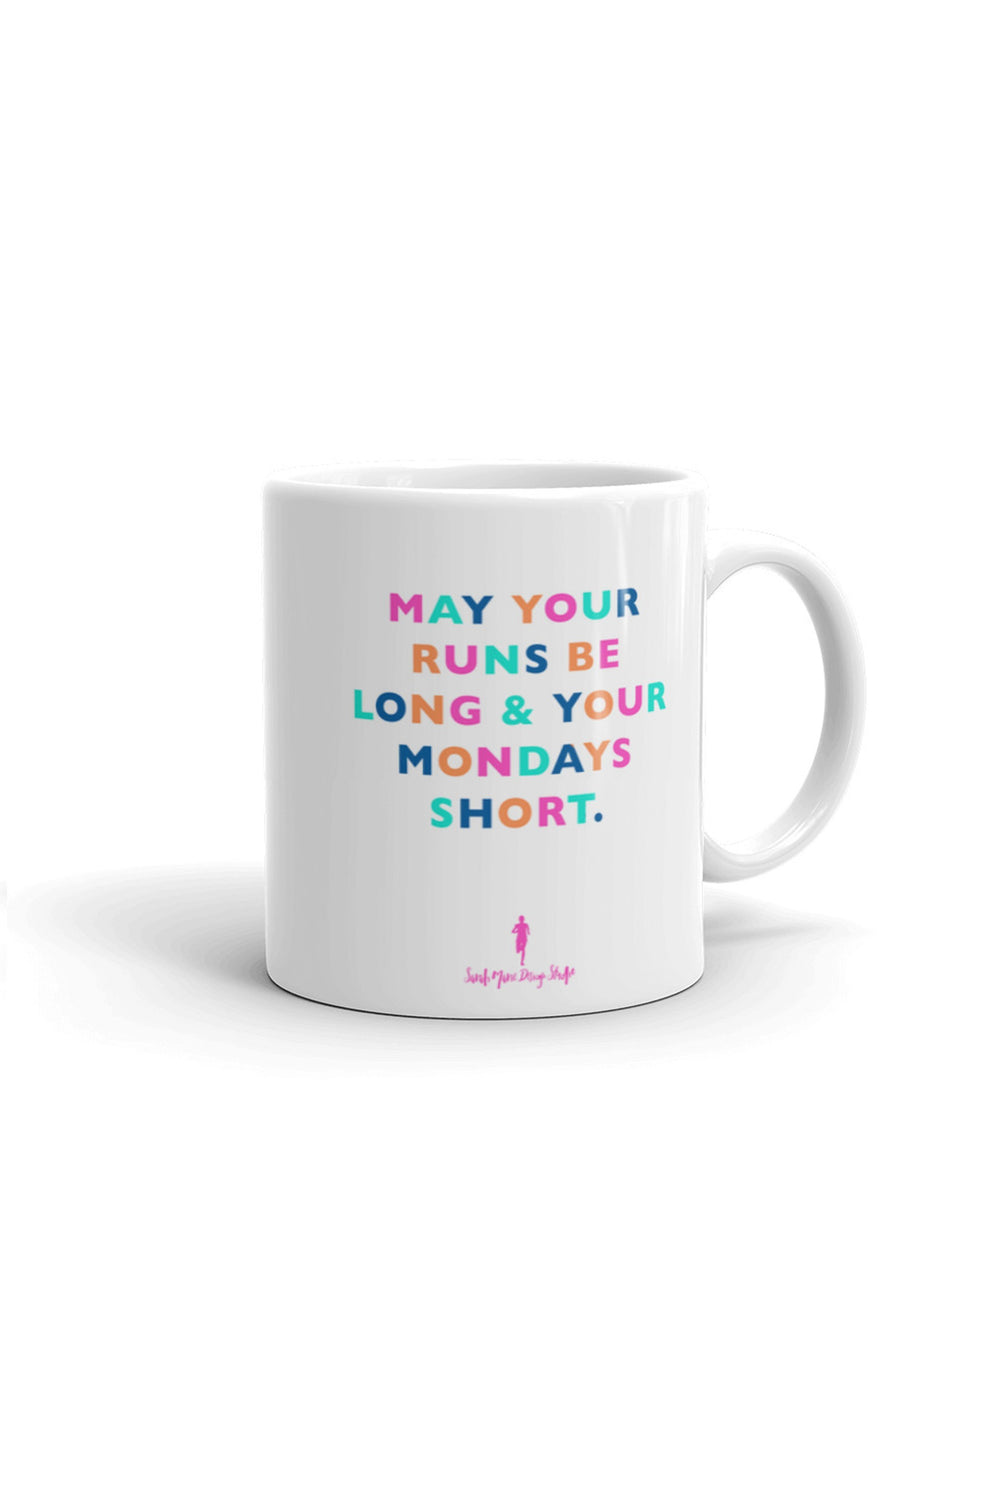 May your runs be long and your Mondays Short Mug - Sarah Marie Design Studio